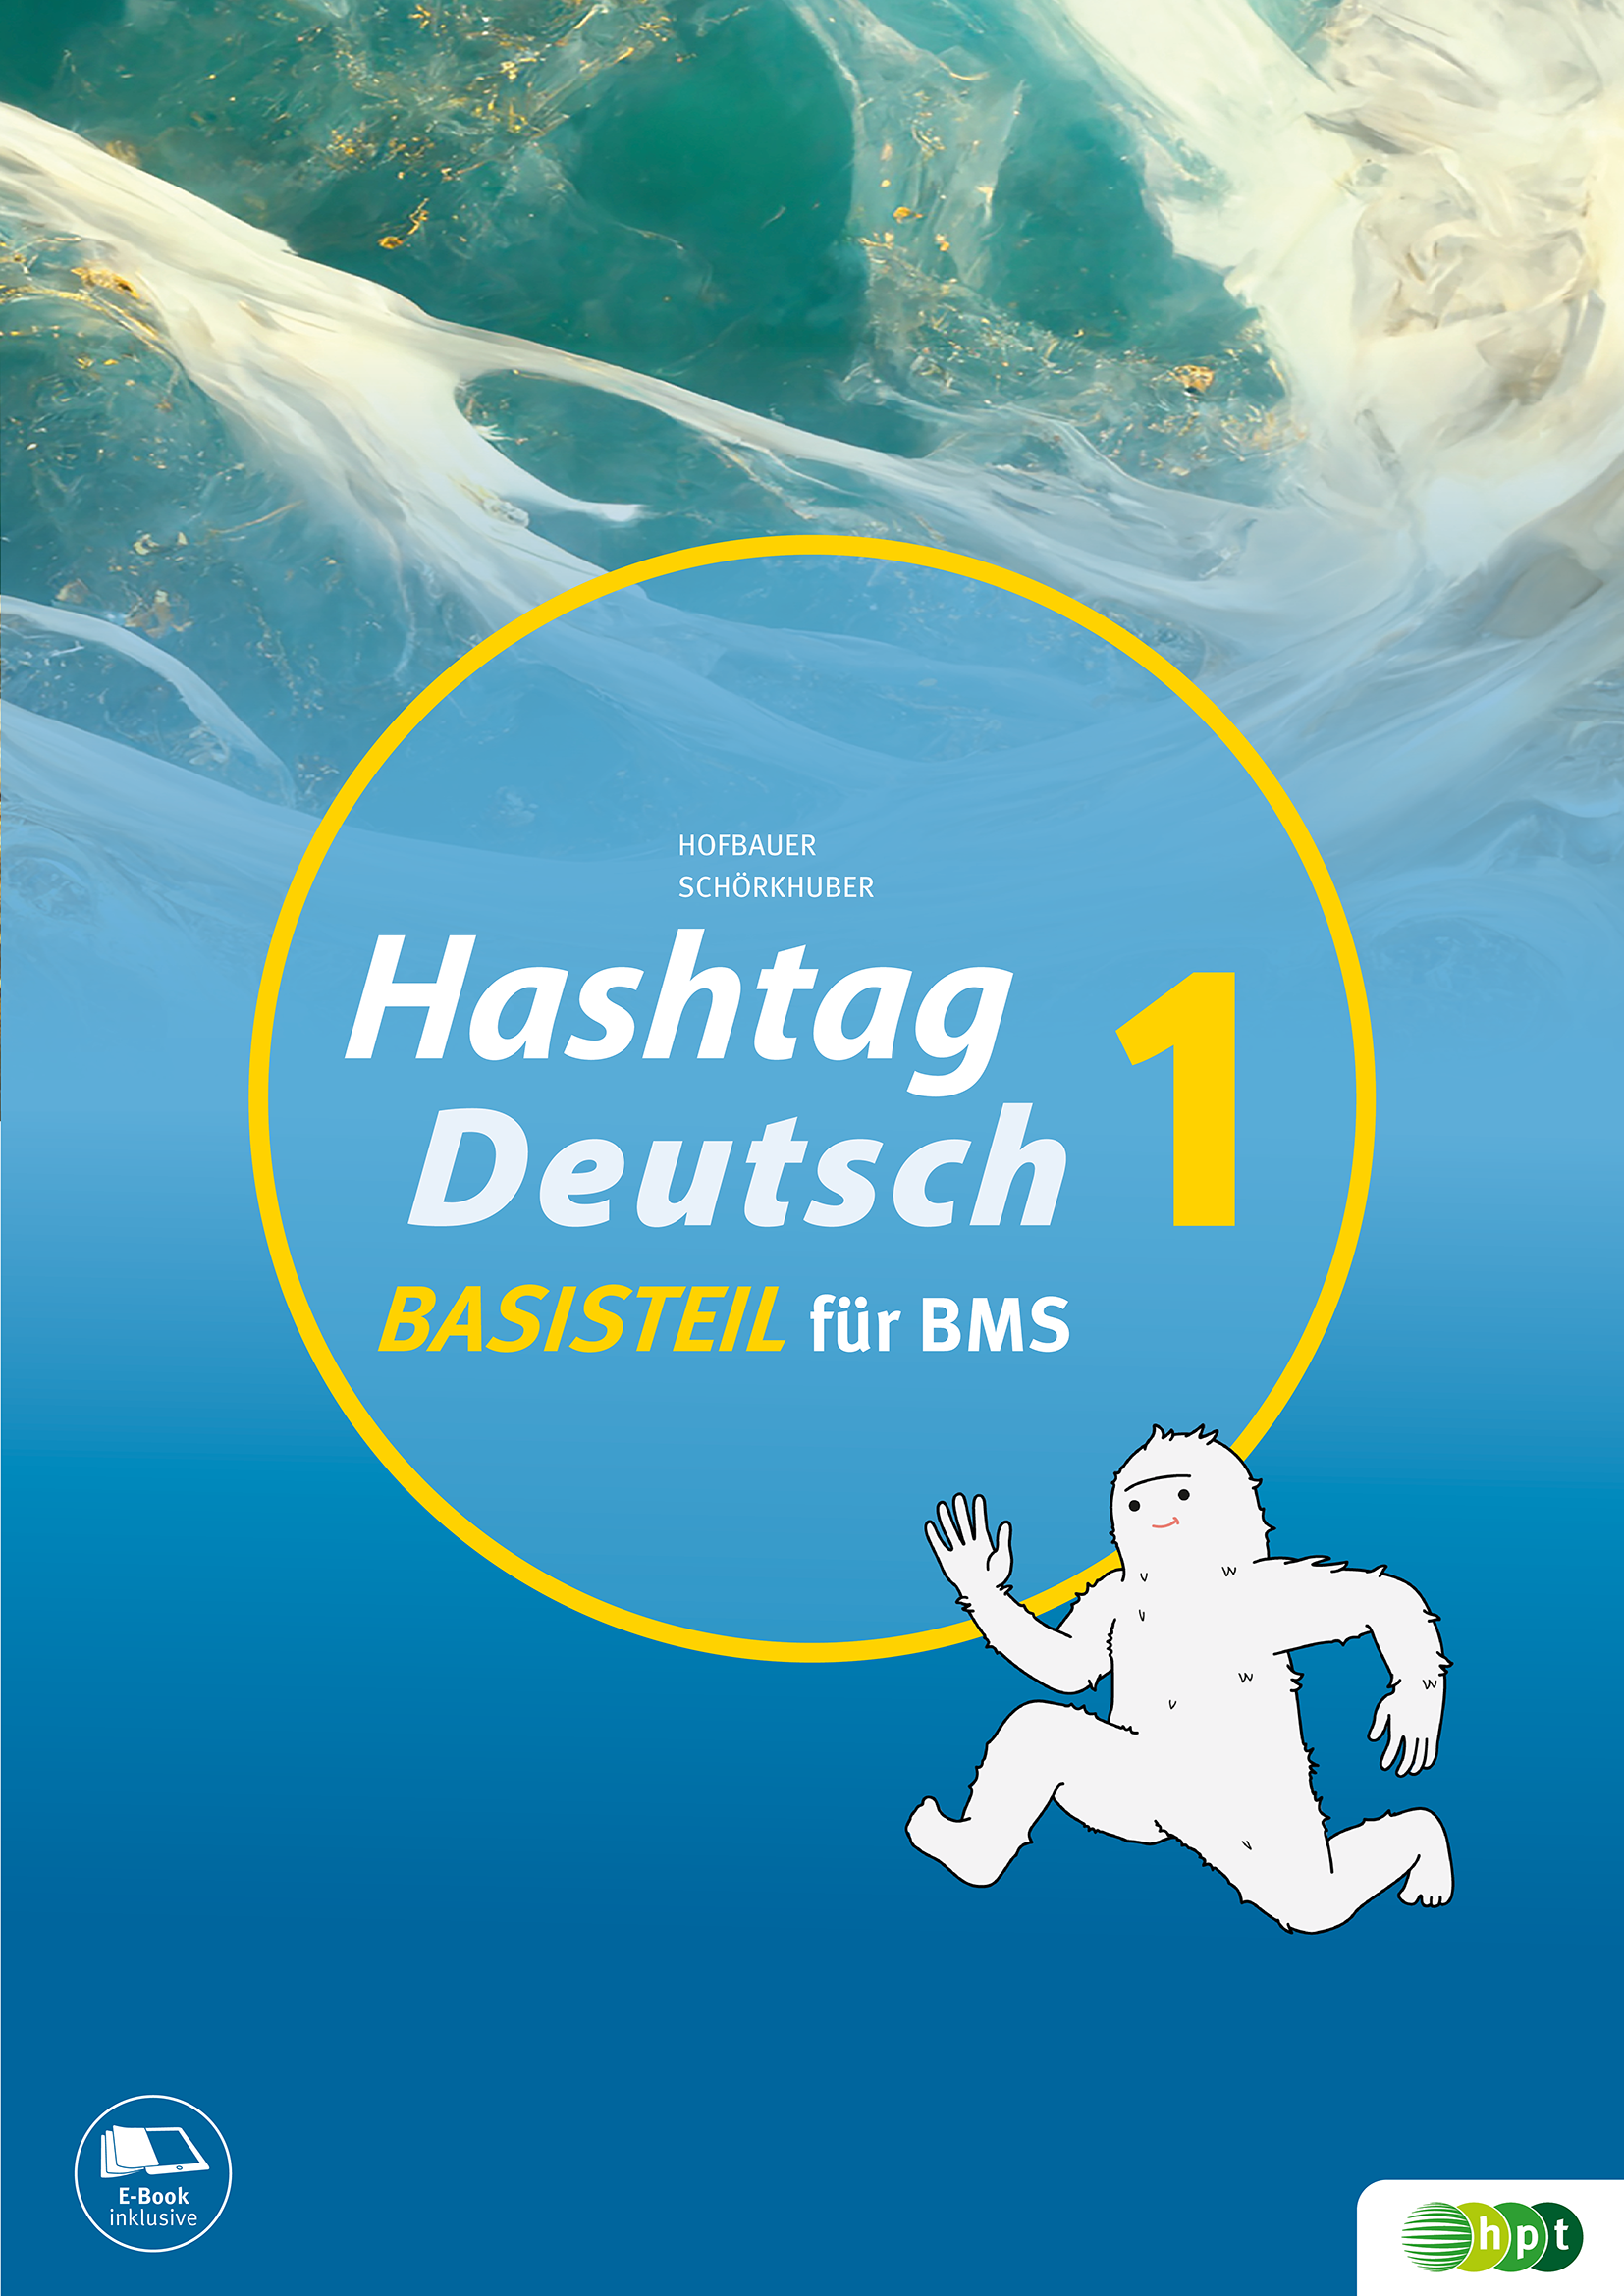 Hashtag_Deutsch_Basisteil_1